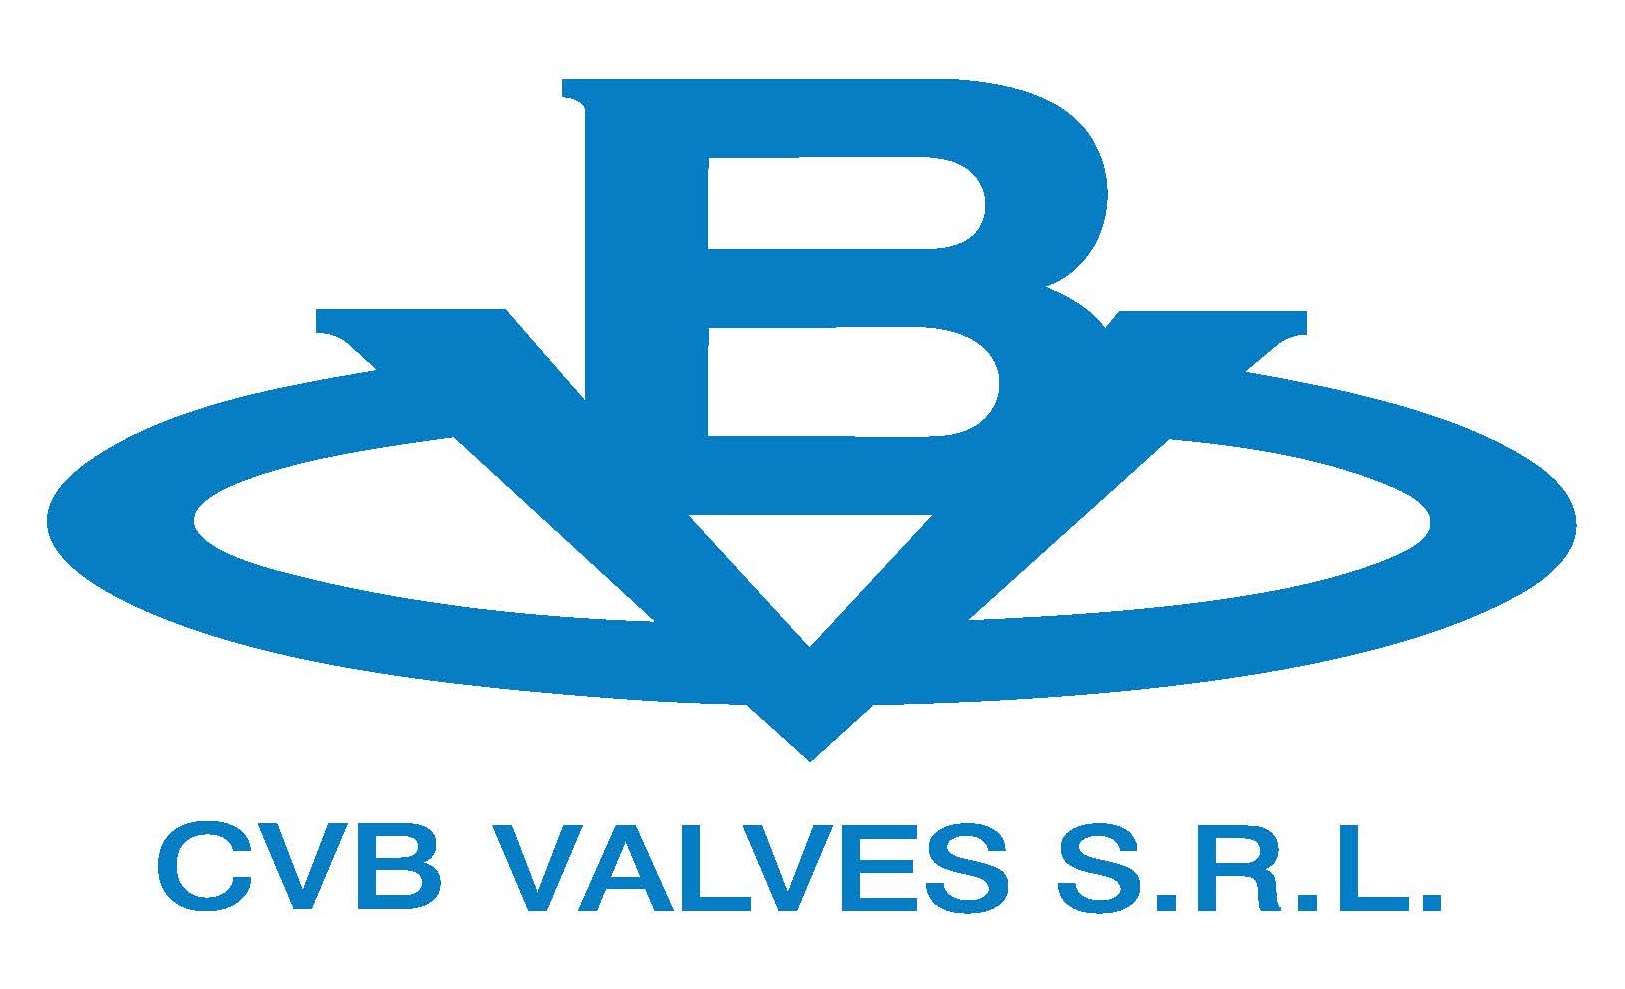 Cvb Valves S.R.L. - Macchinari